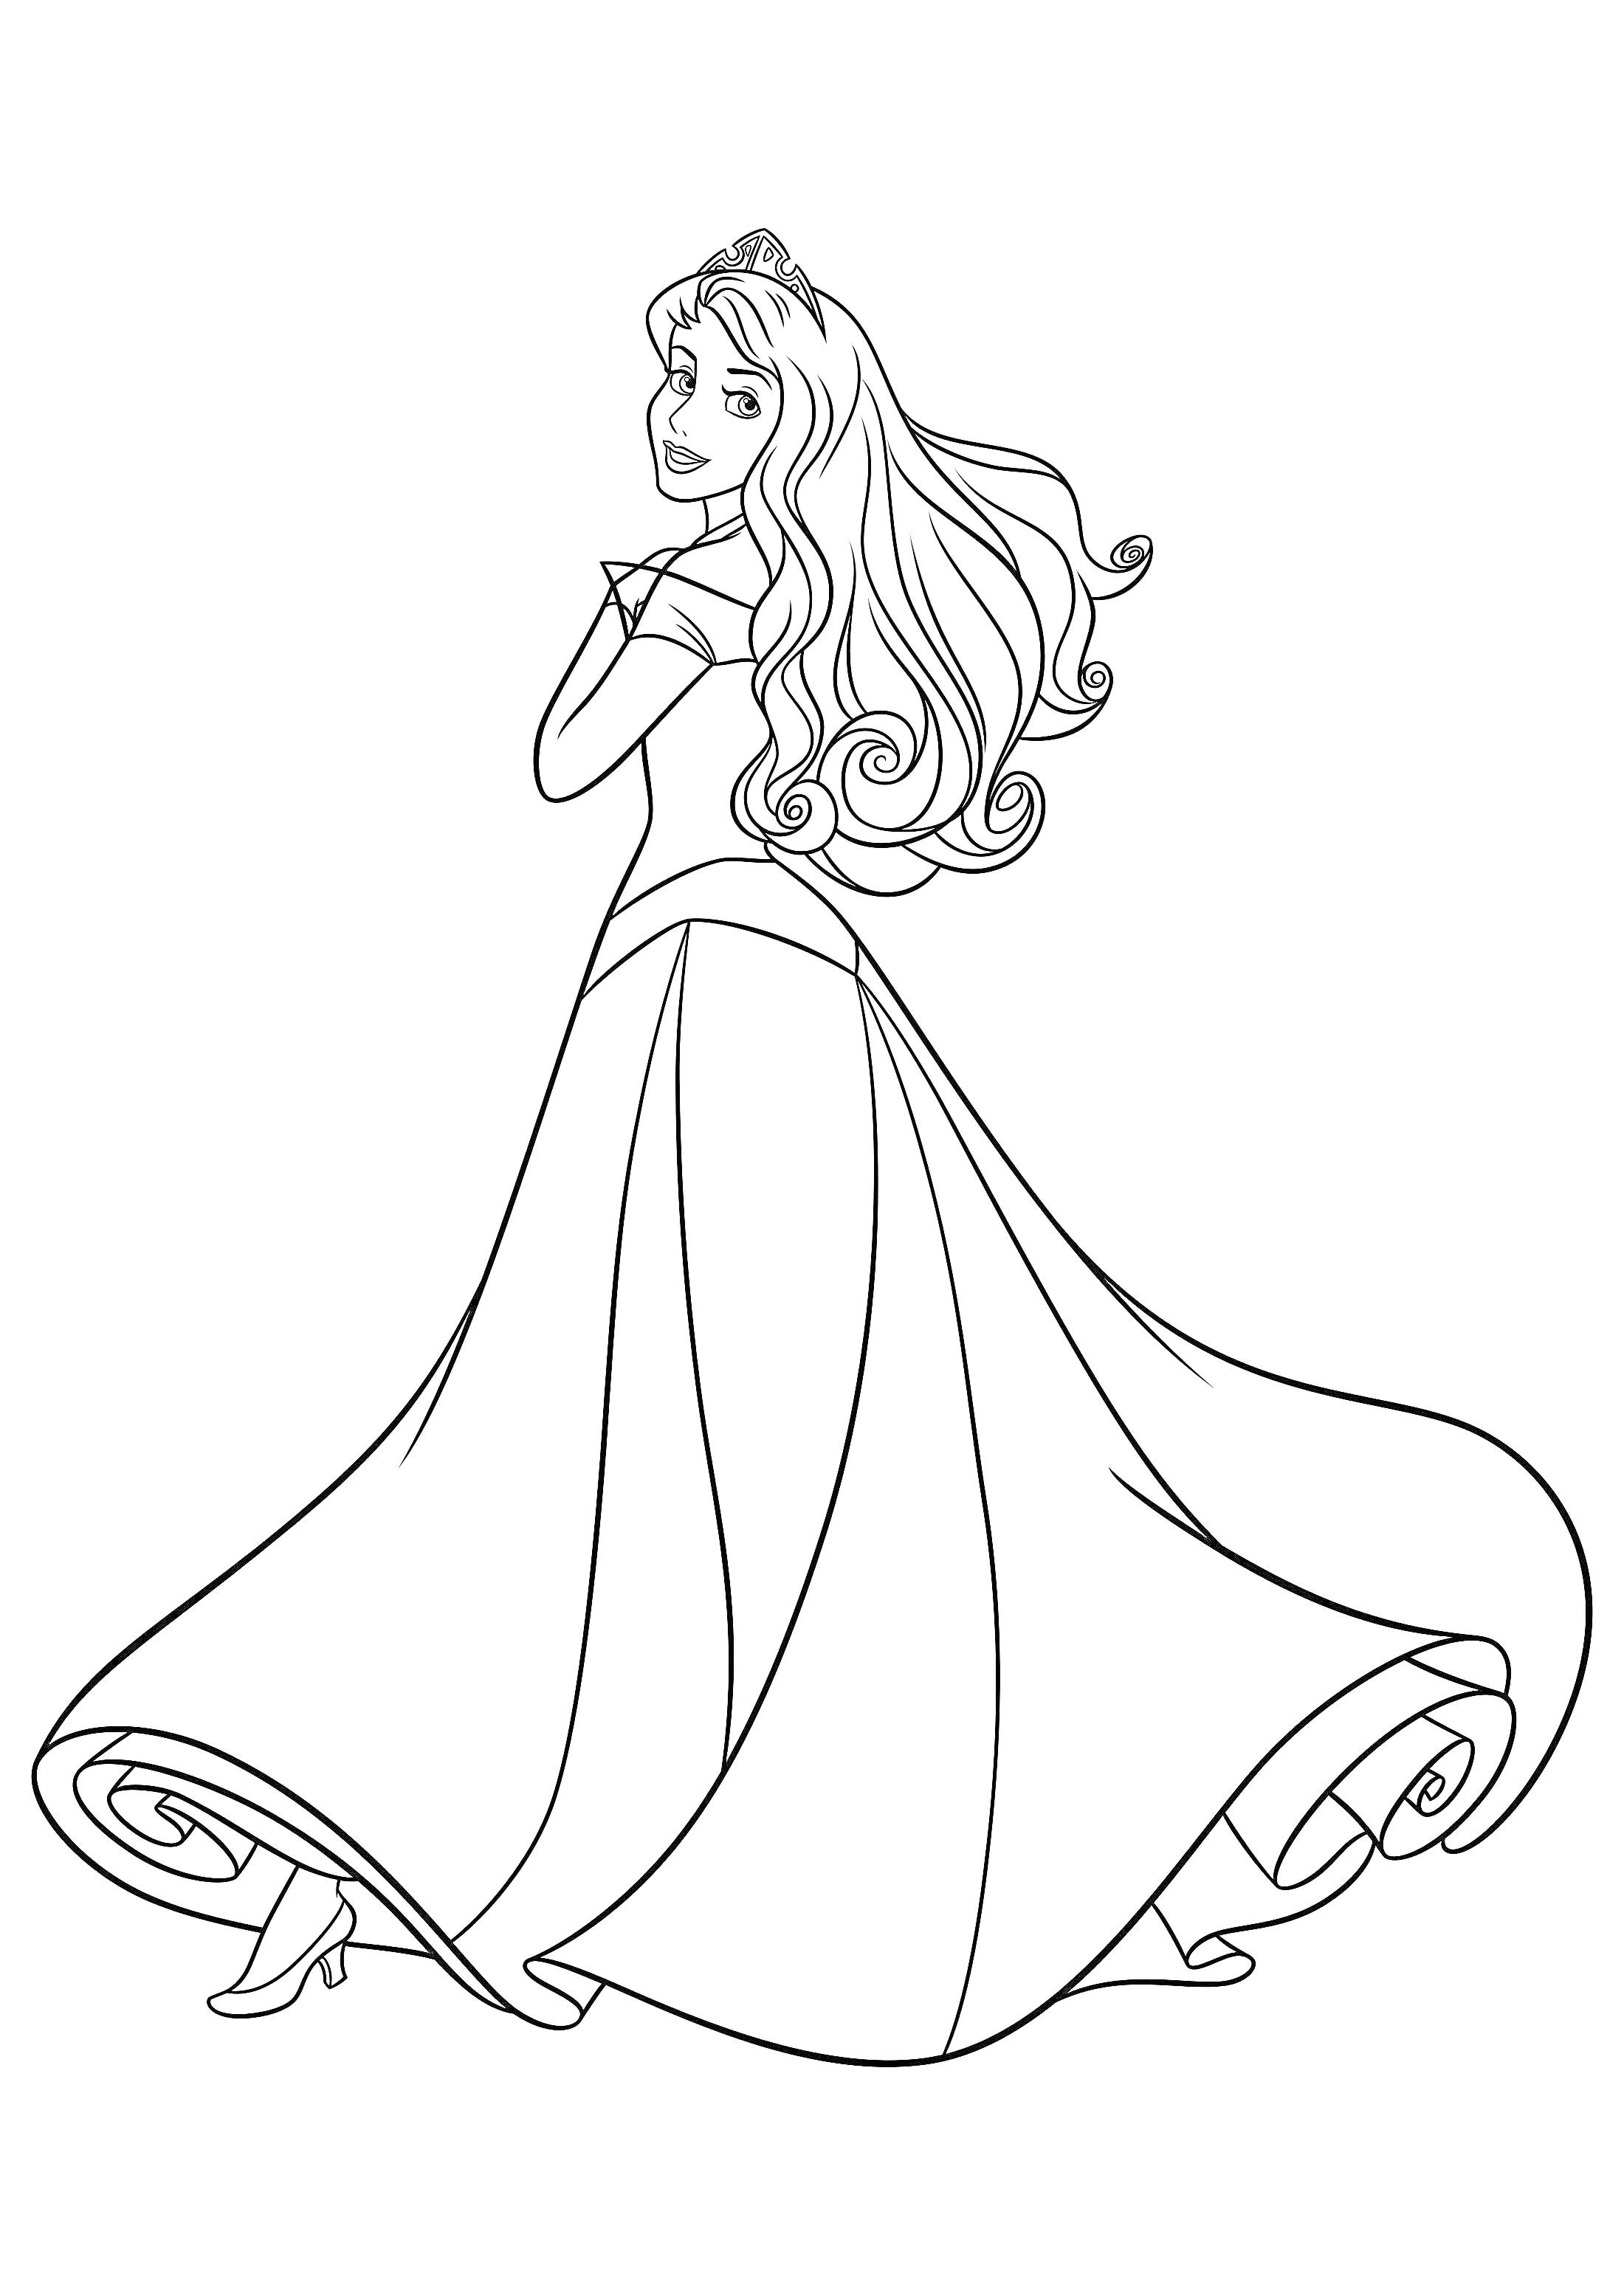 принцесса с длинными волосами в пышном платье и туфлях